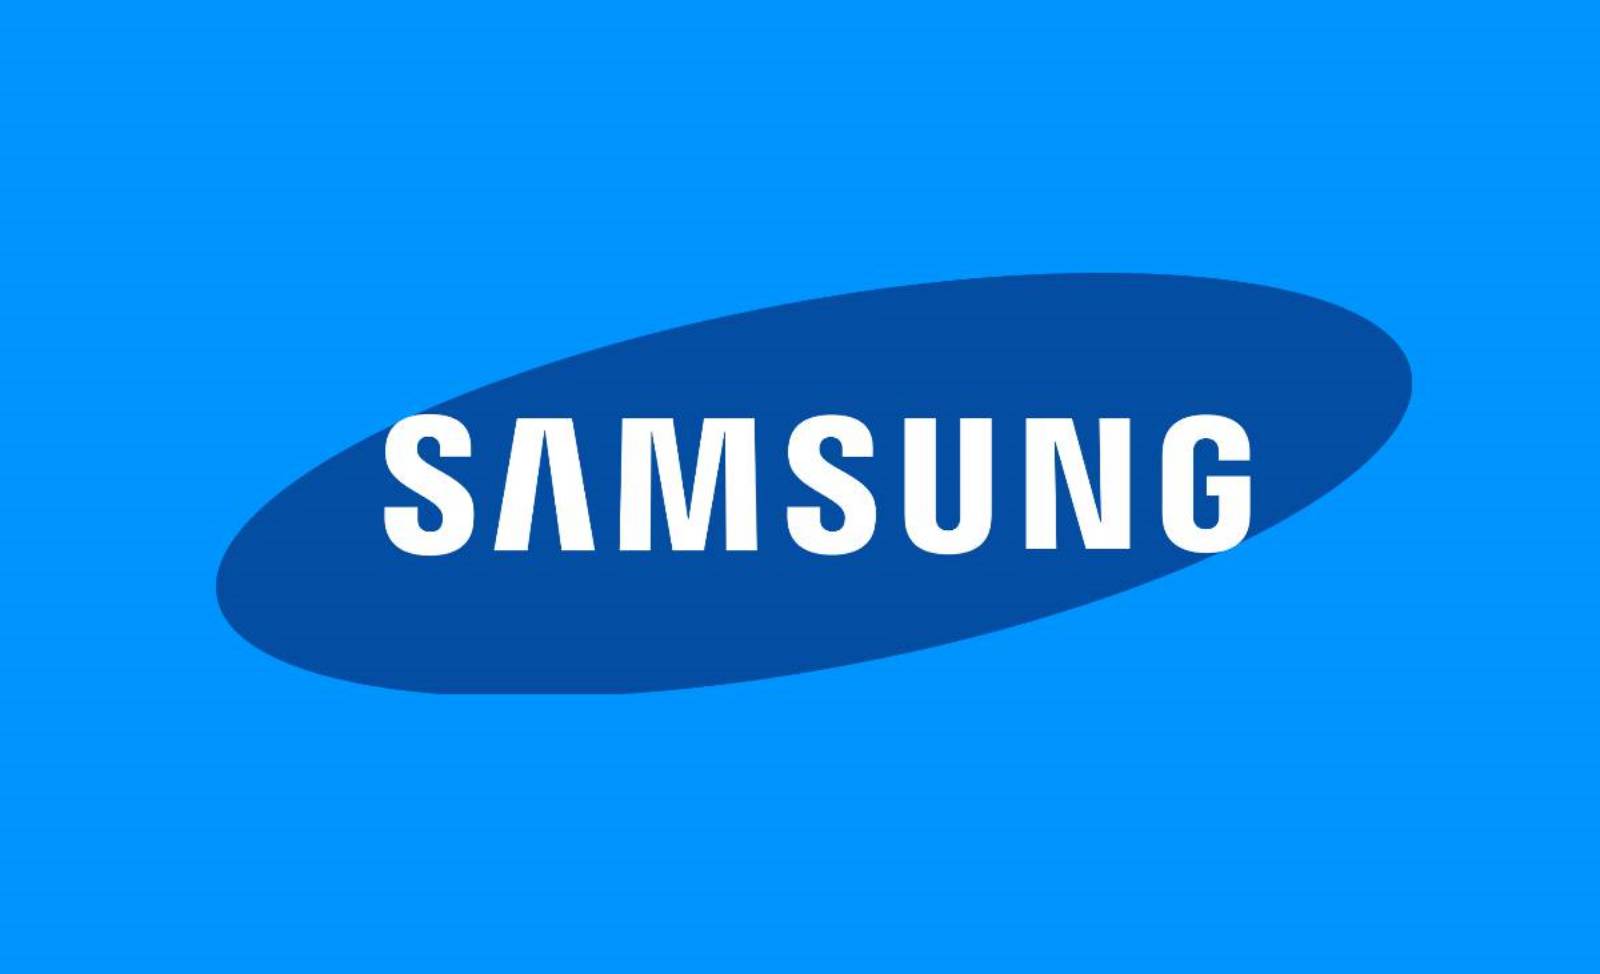 Samsung bringt neue Sicherheitschips für Telefone auf den Markt